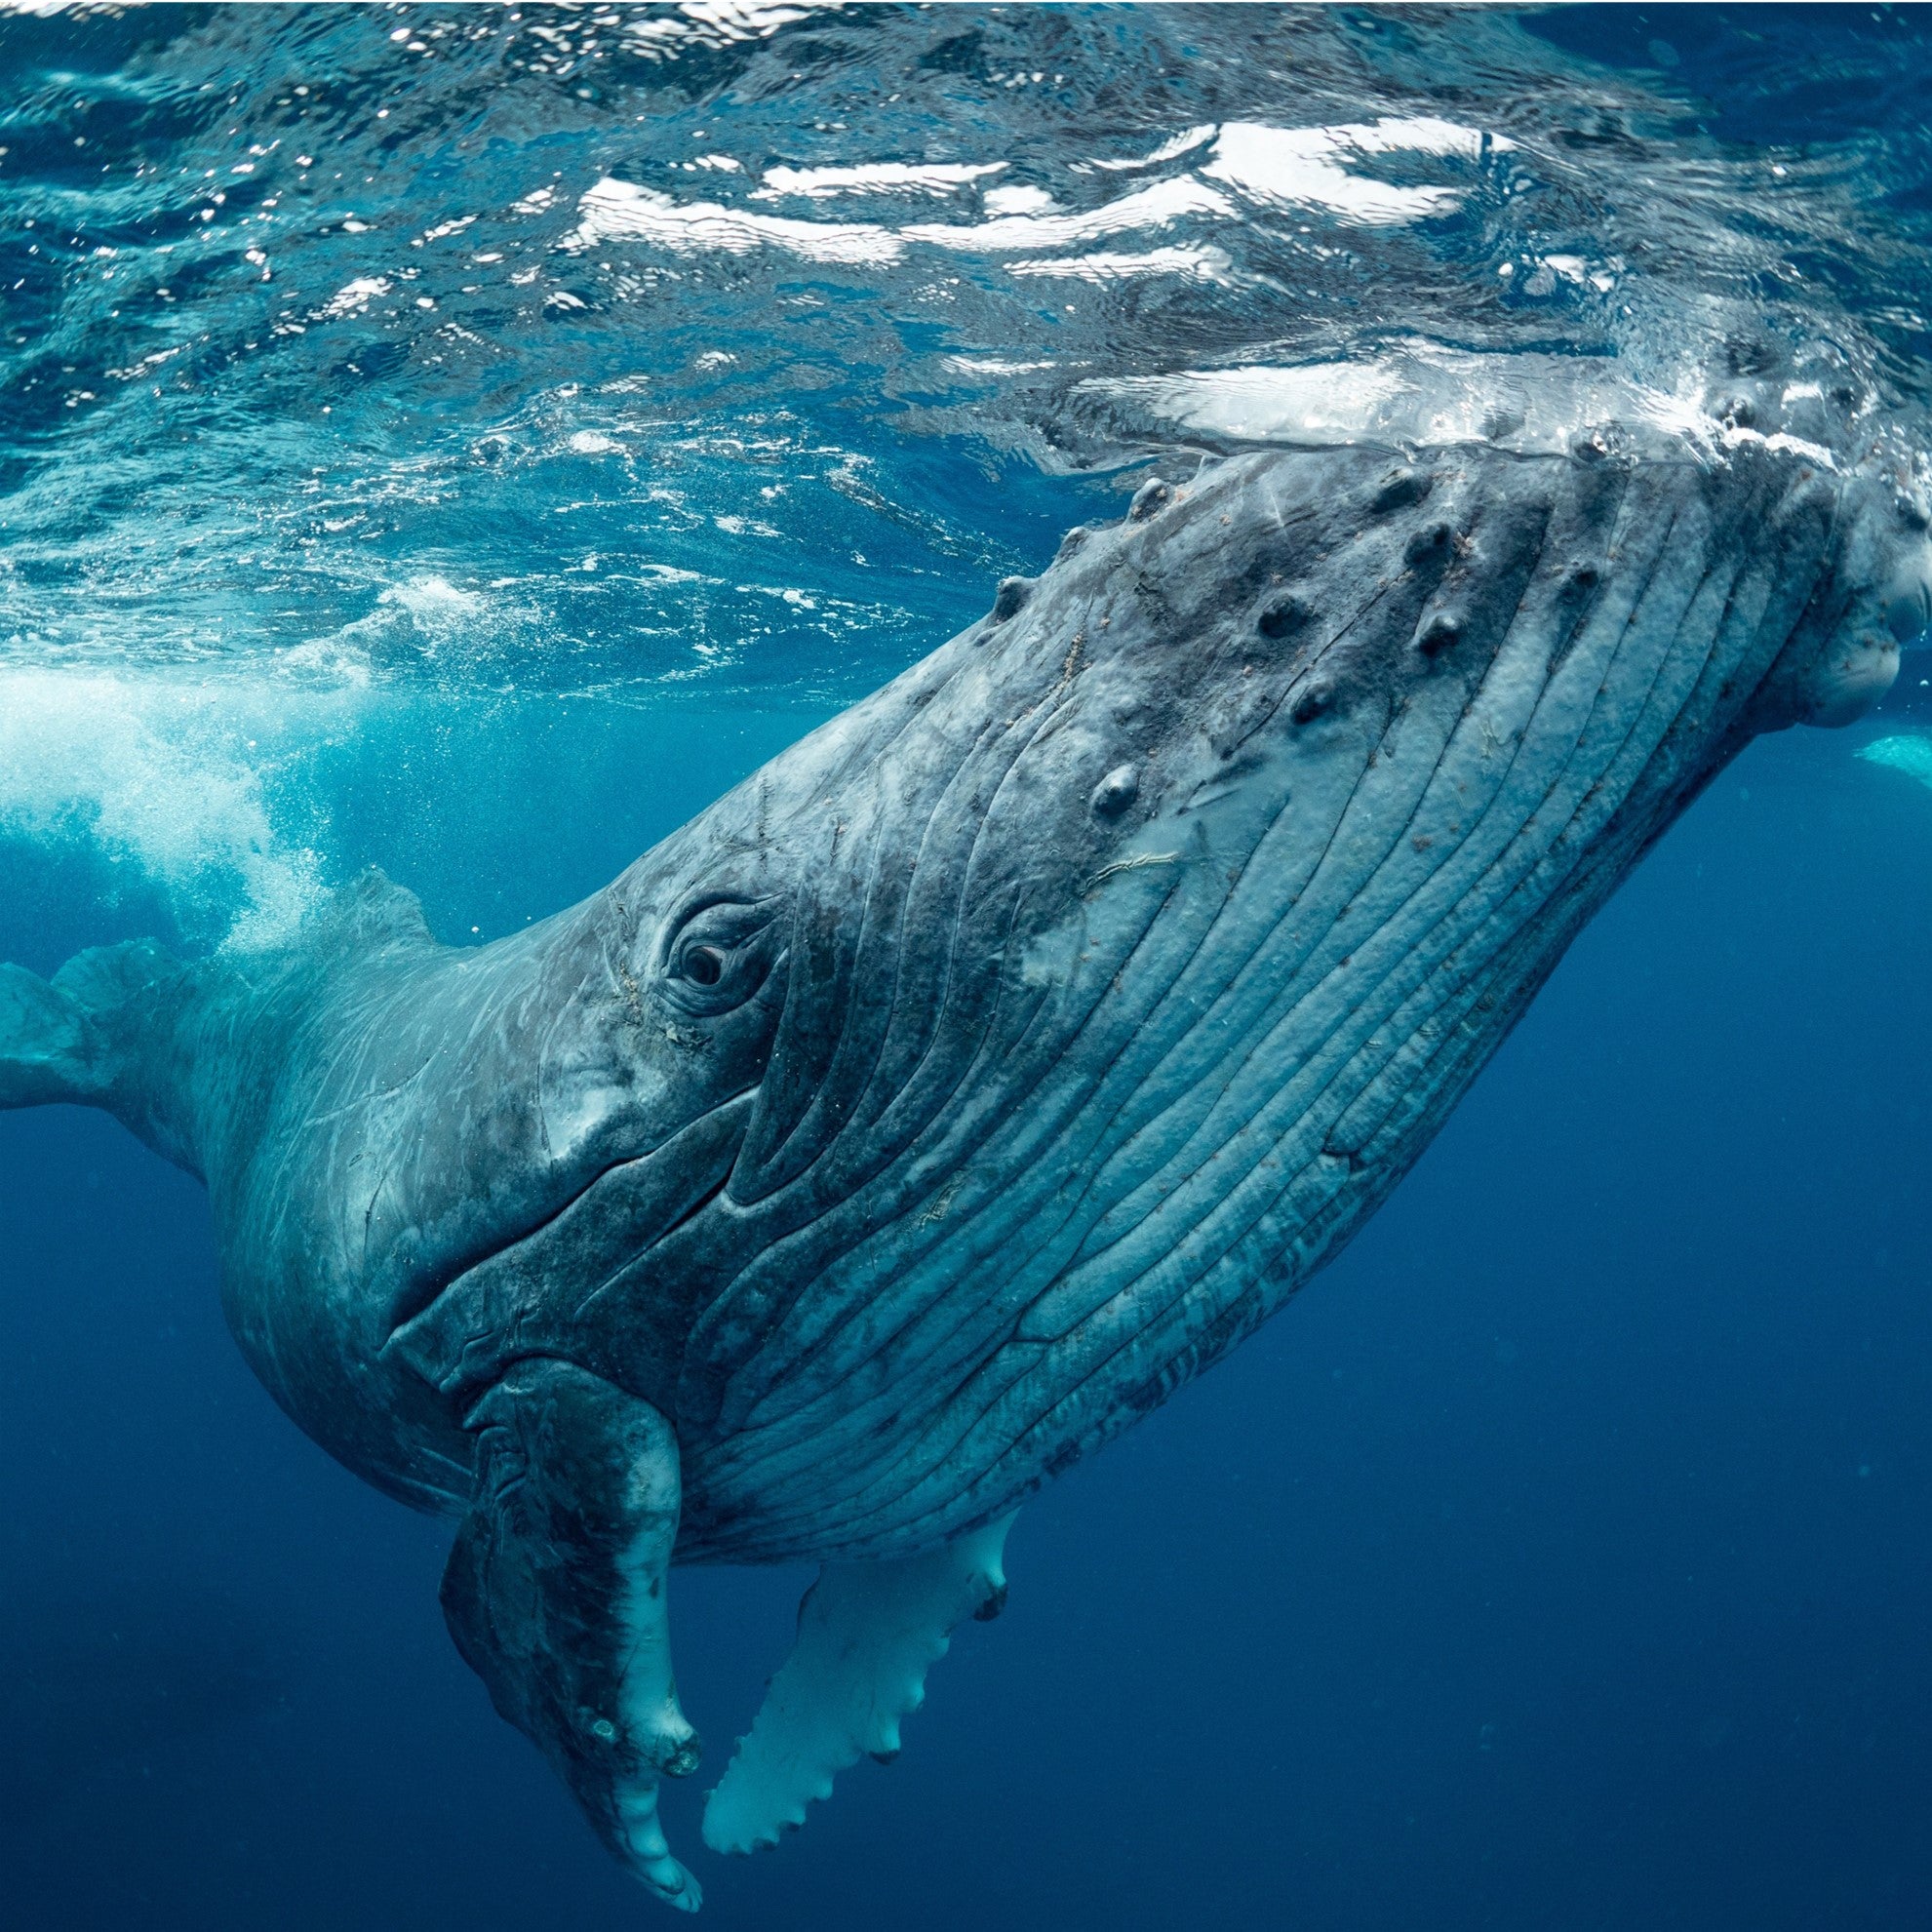 Humpback whale - WWF-Canada